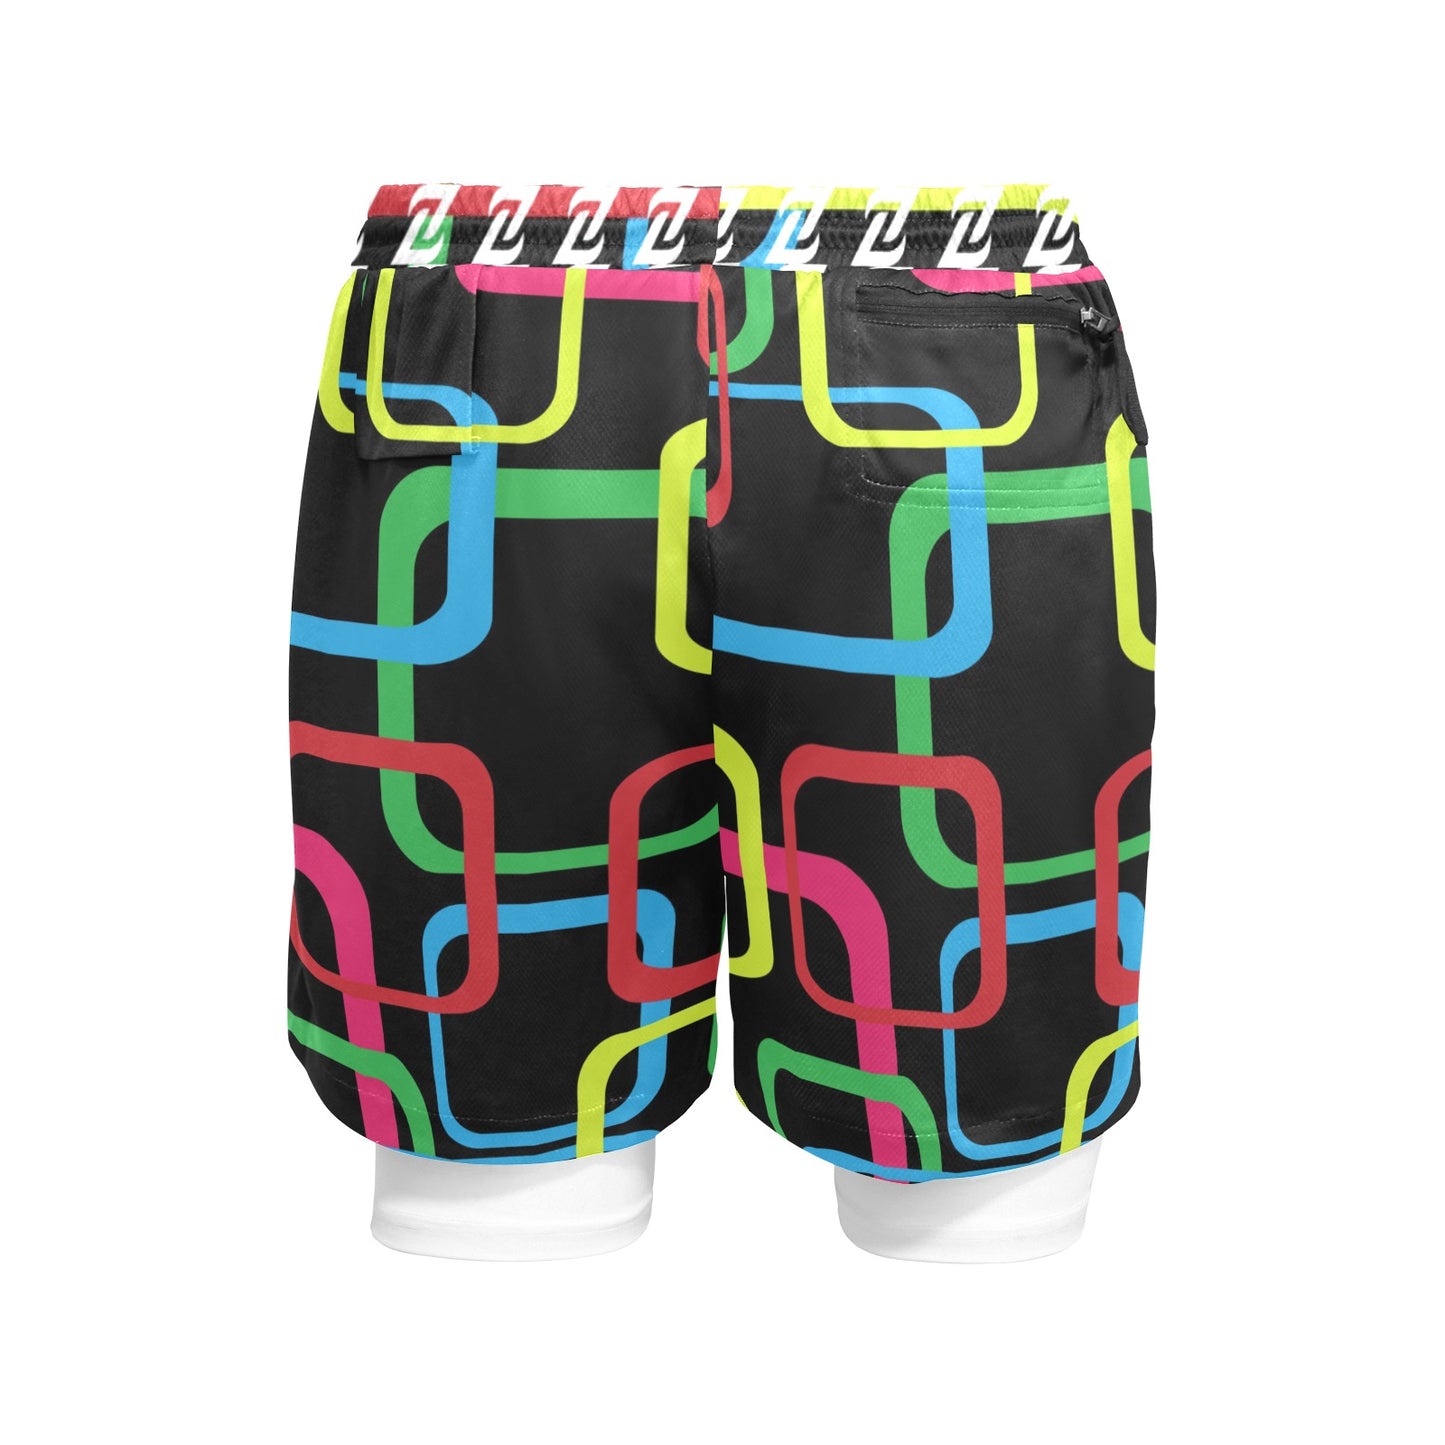 Zen Shorts with Liner - 3d Sqaures